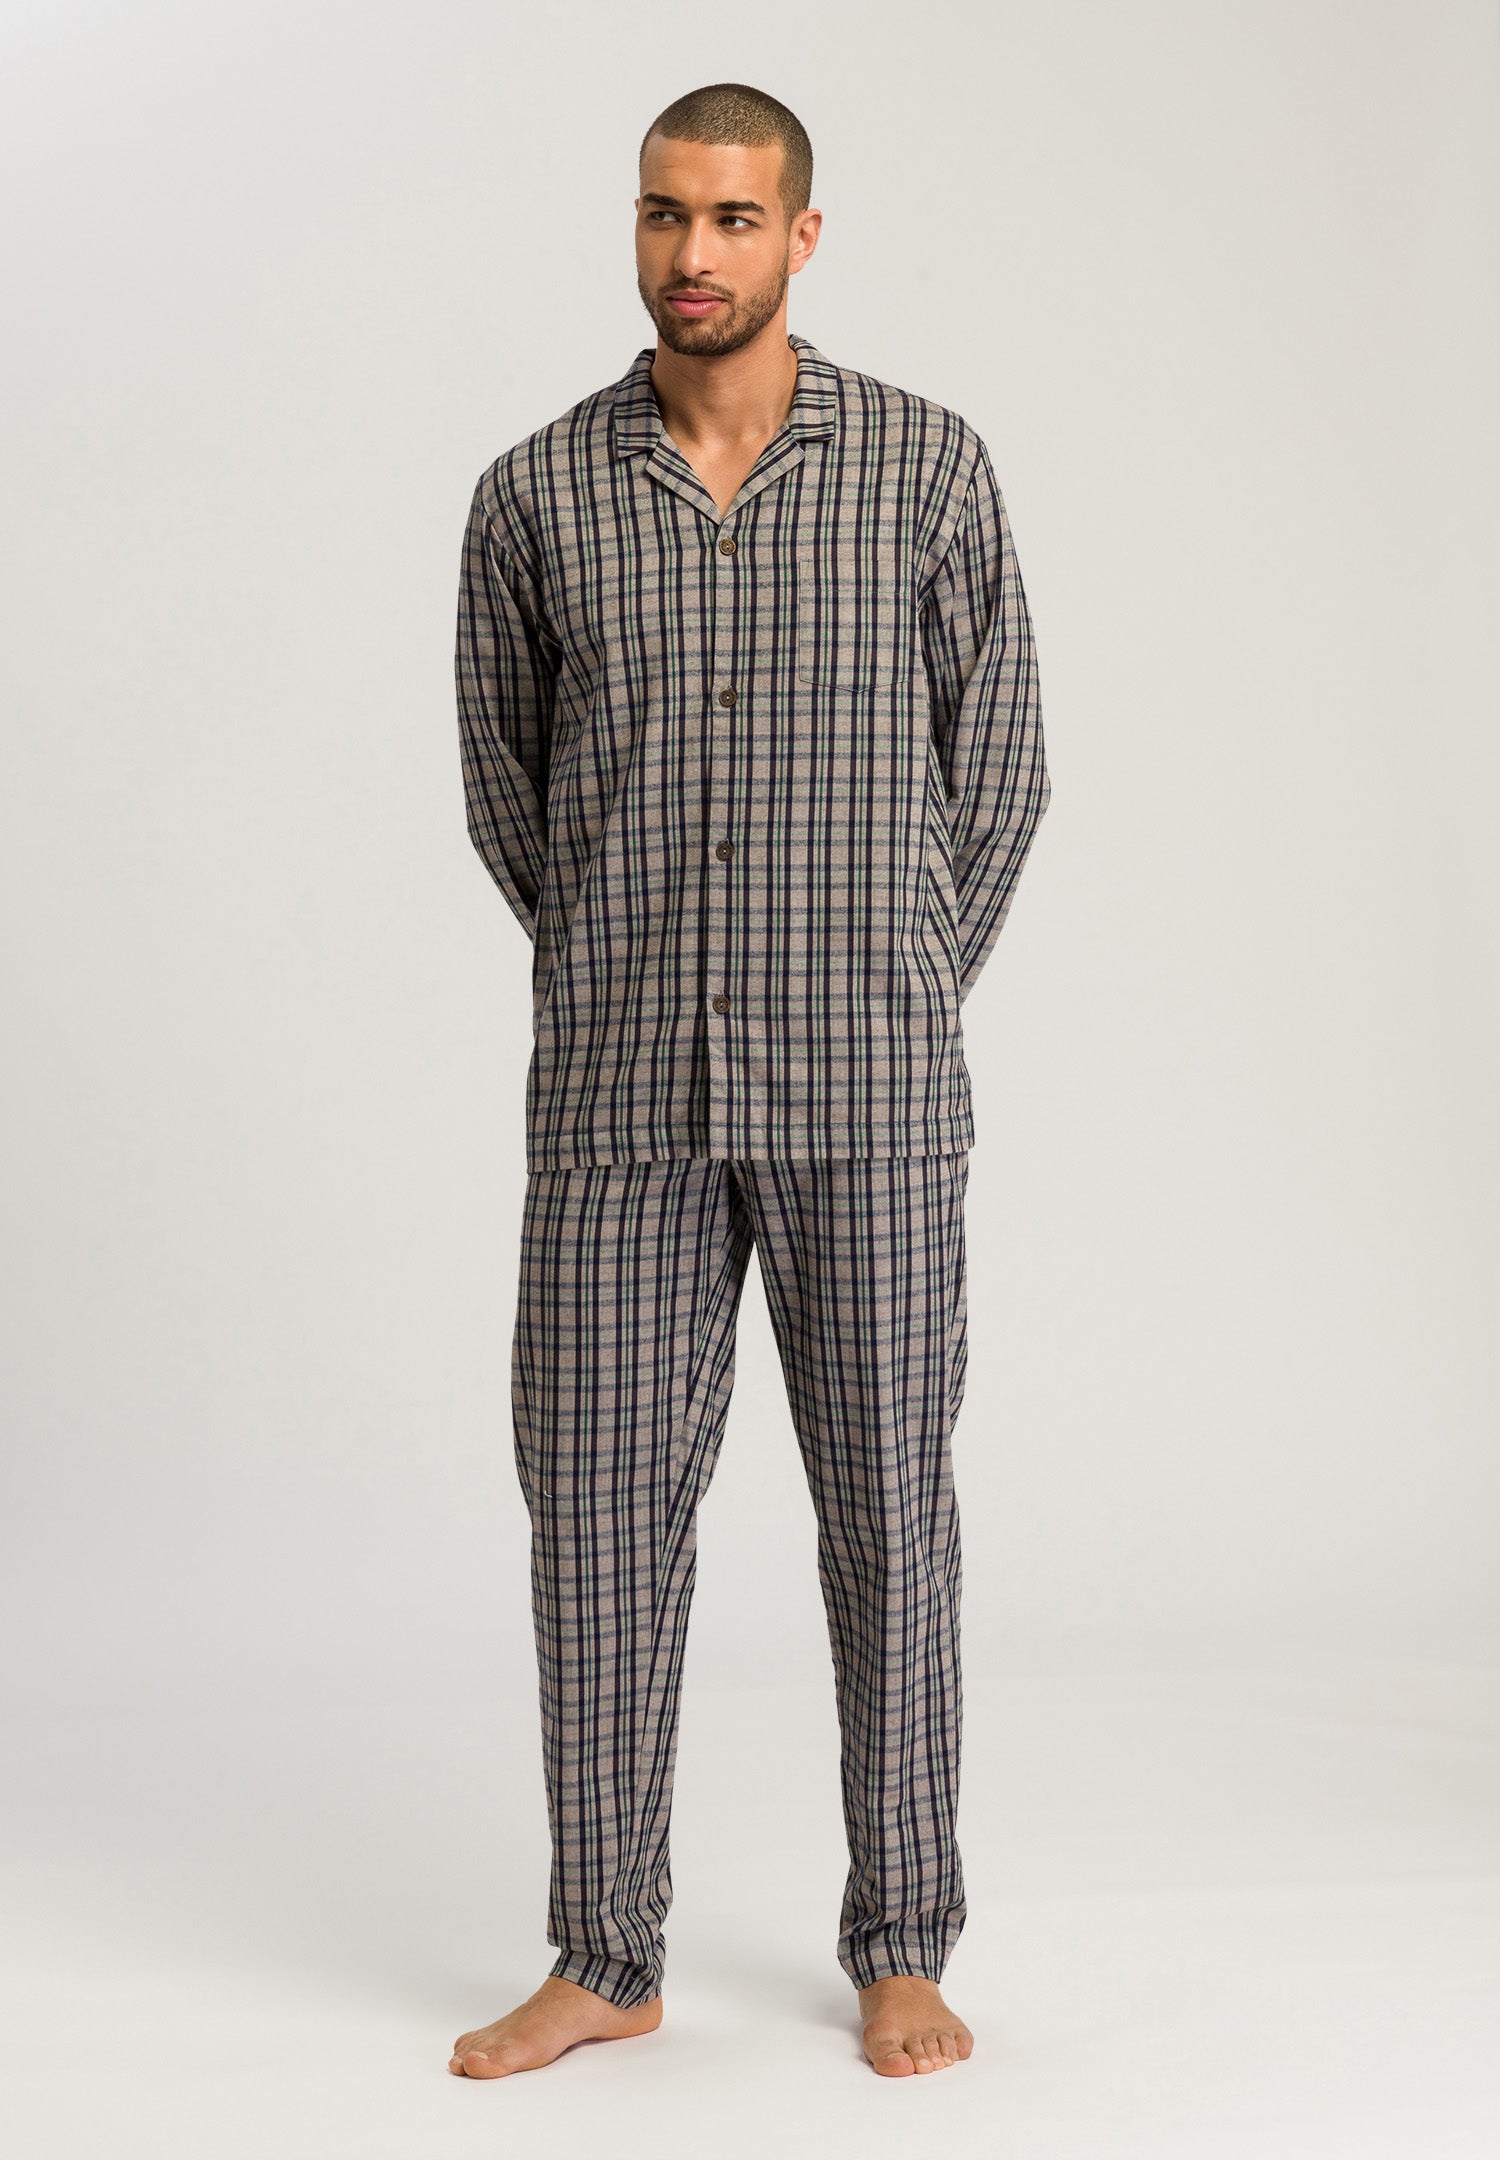 75724 Cozy Comfort L/Slv Pajama - 2389 Essential Stripe